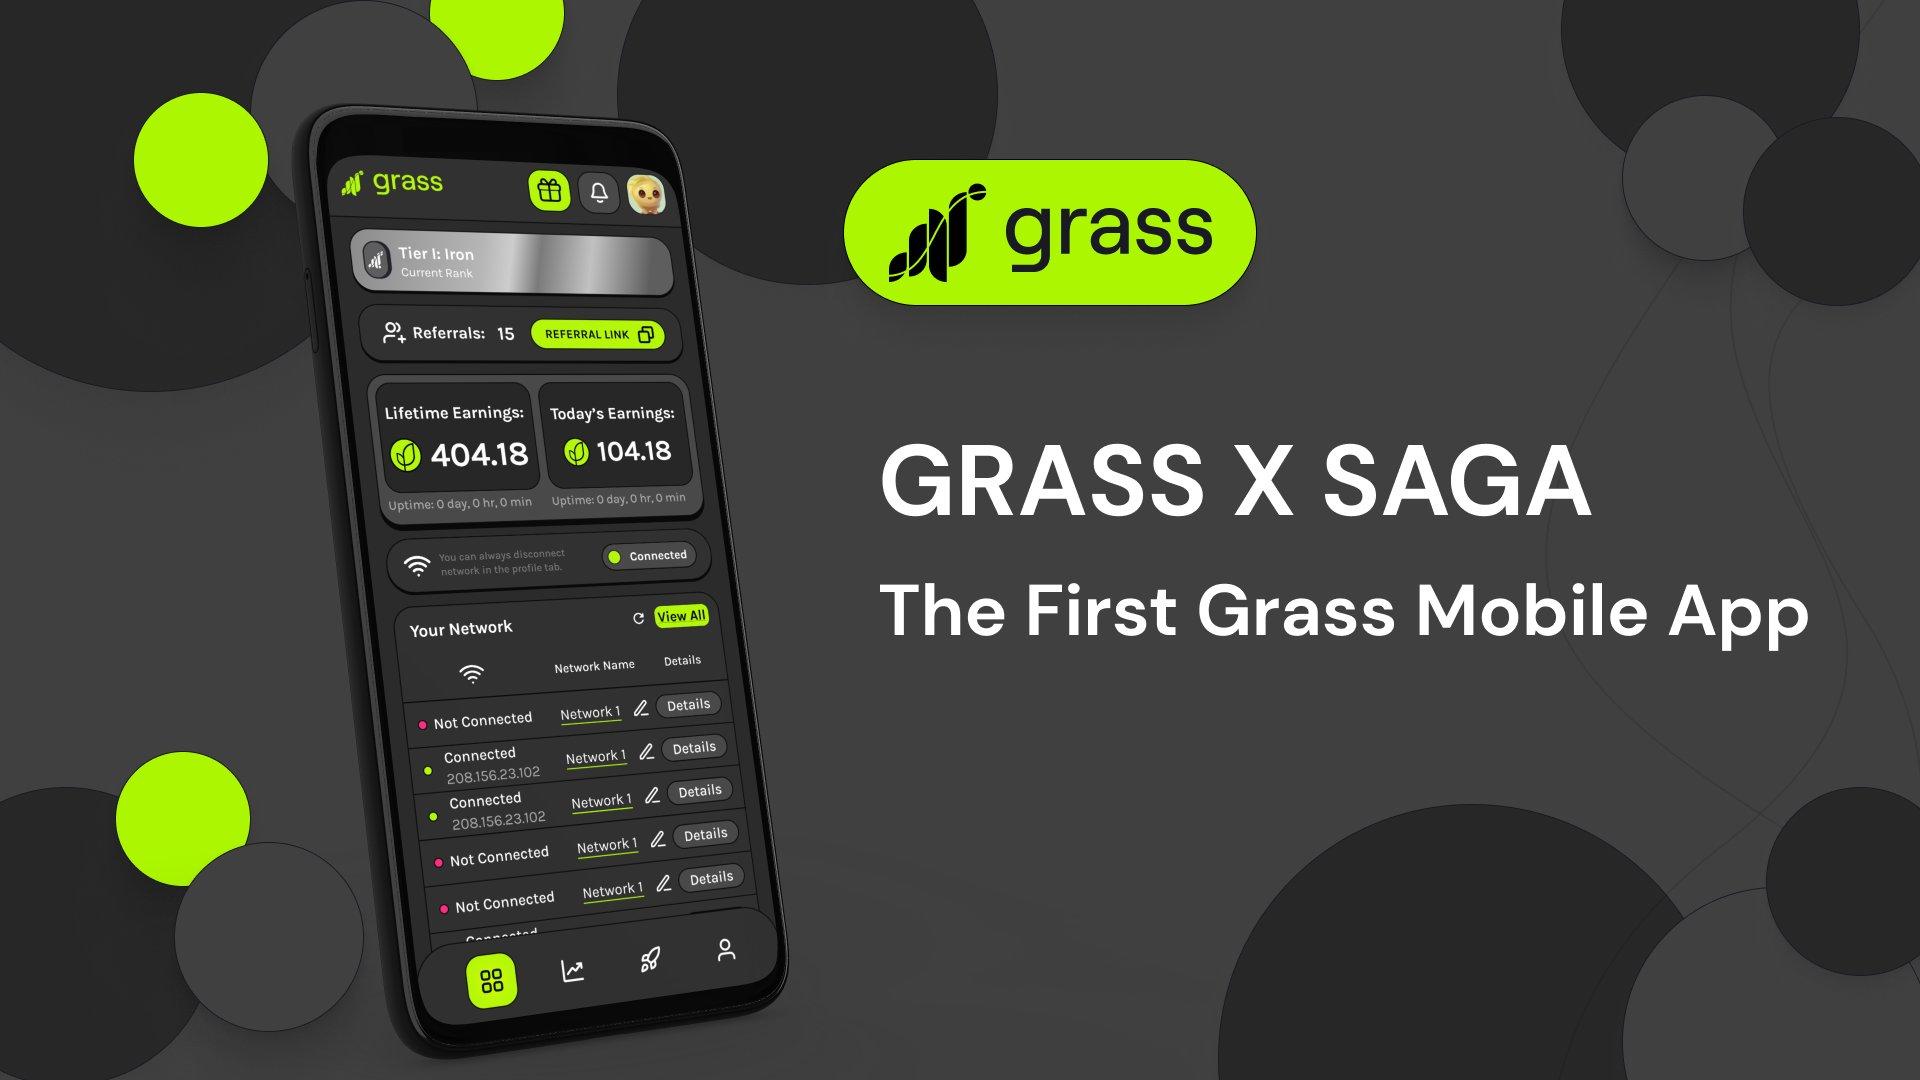 Grass X Saga